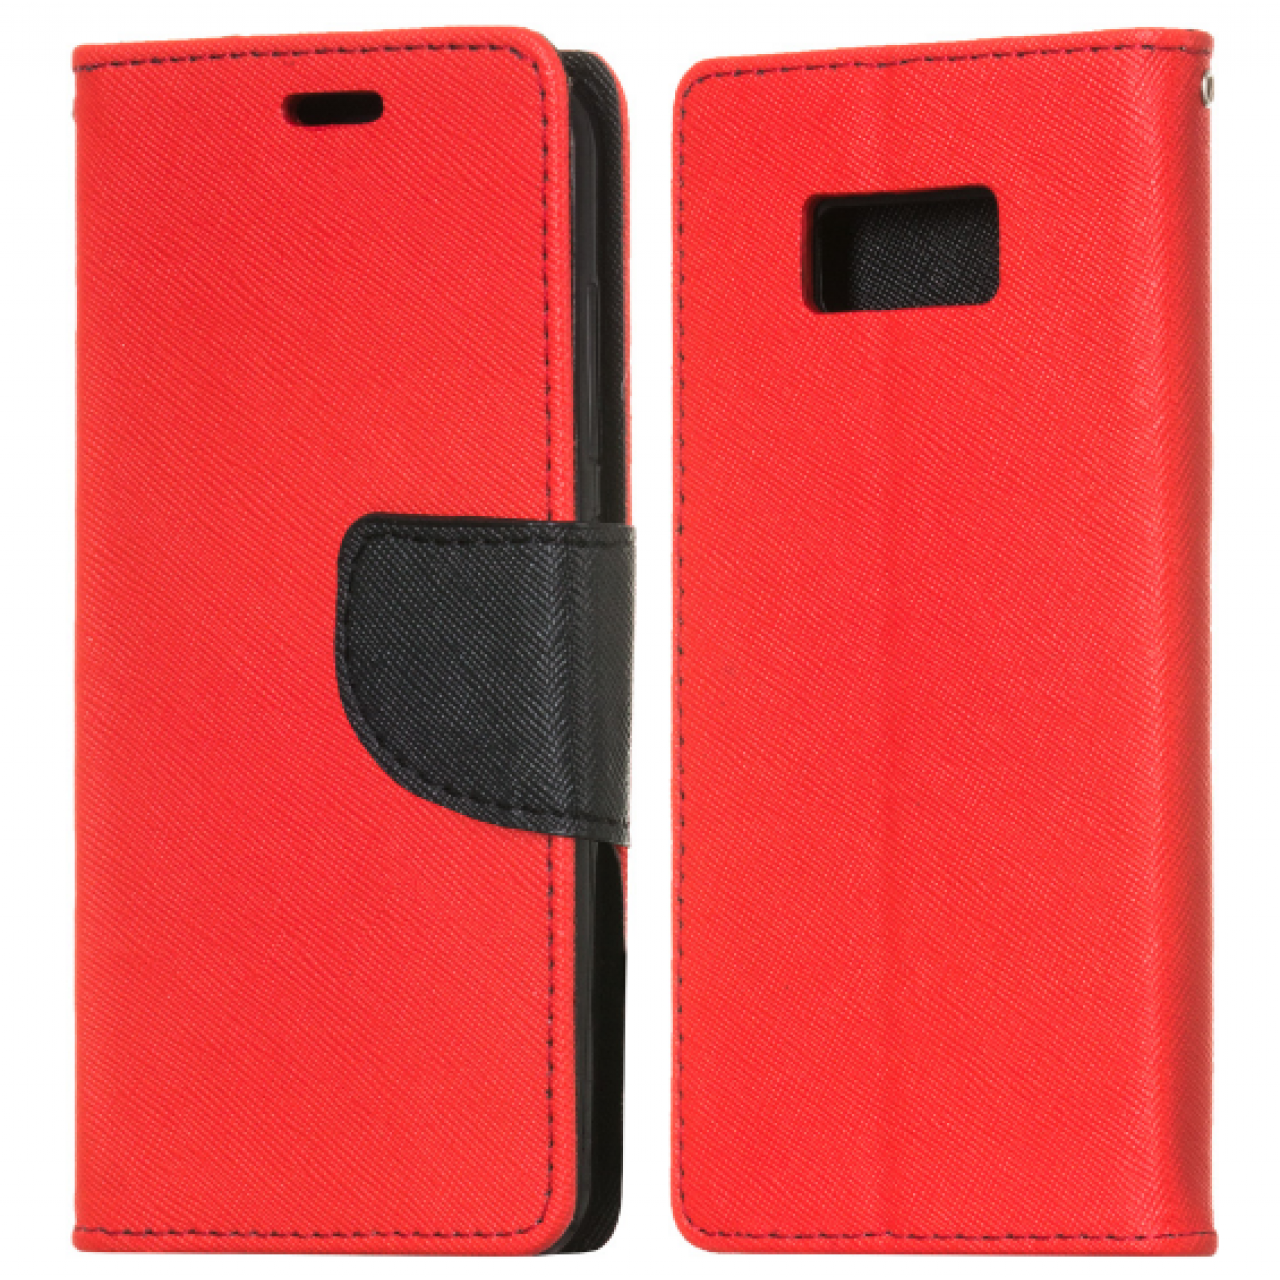 Θήκη Samsung Galaxy (G955) S8 Plus PU Leather Πορτοφόλι flip Fancy Diary - 3818 - Κόκκινο - OEM